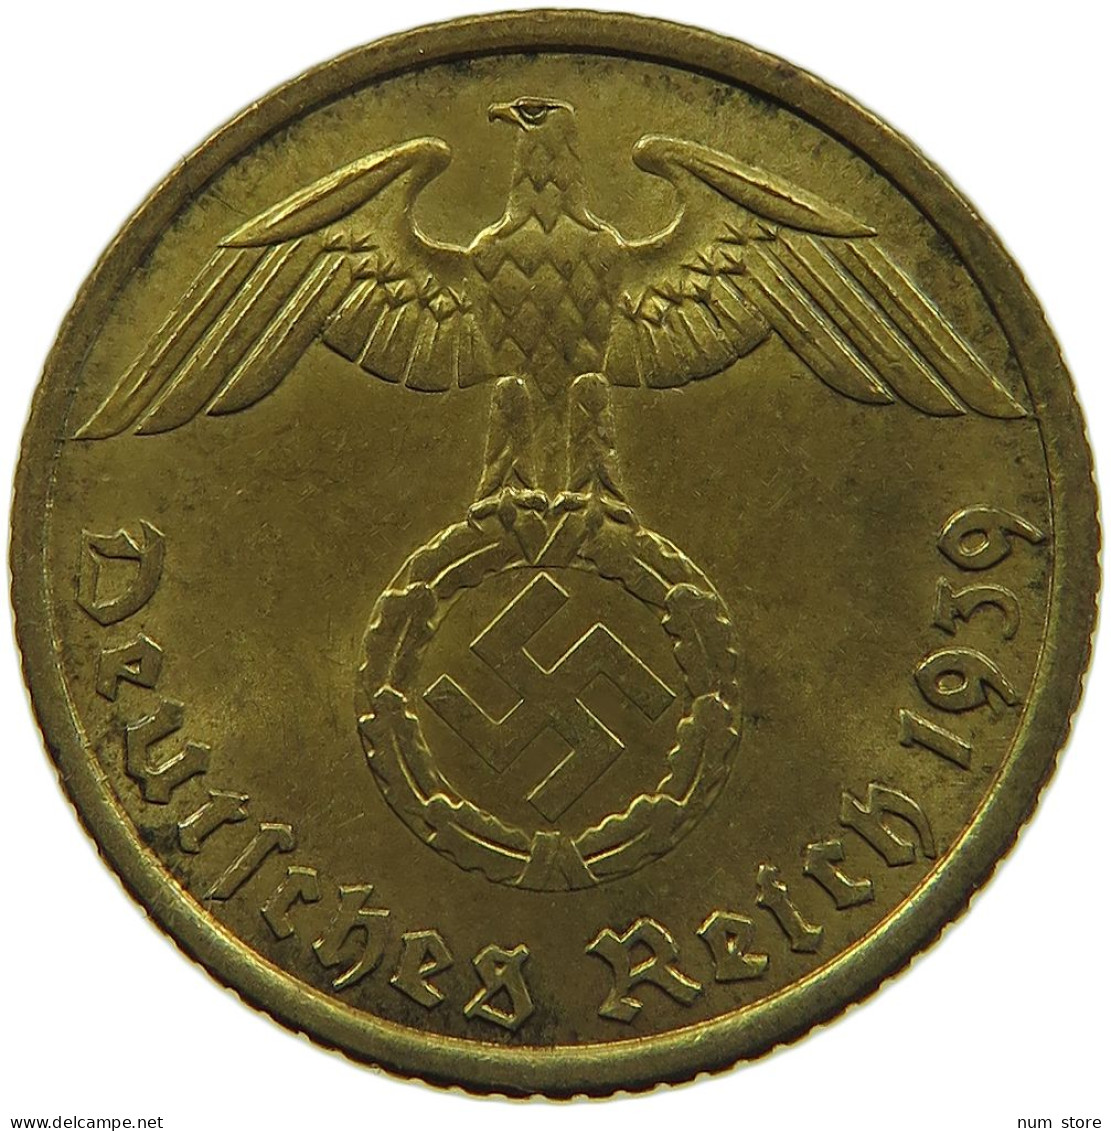 GERMANY 5 REICHSPFENNIG 1939 A #s091 0699 - 5 Reichspfennig